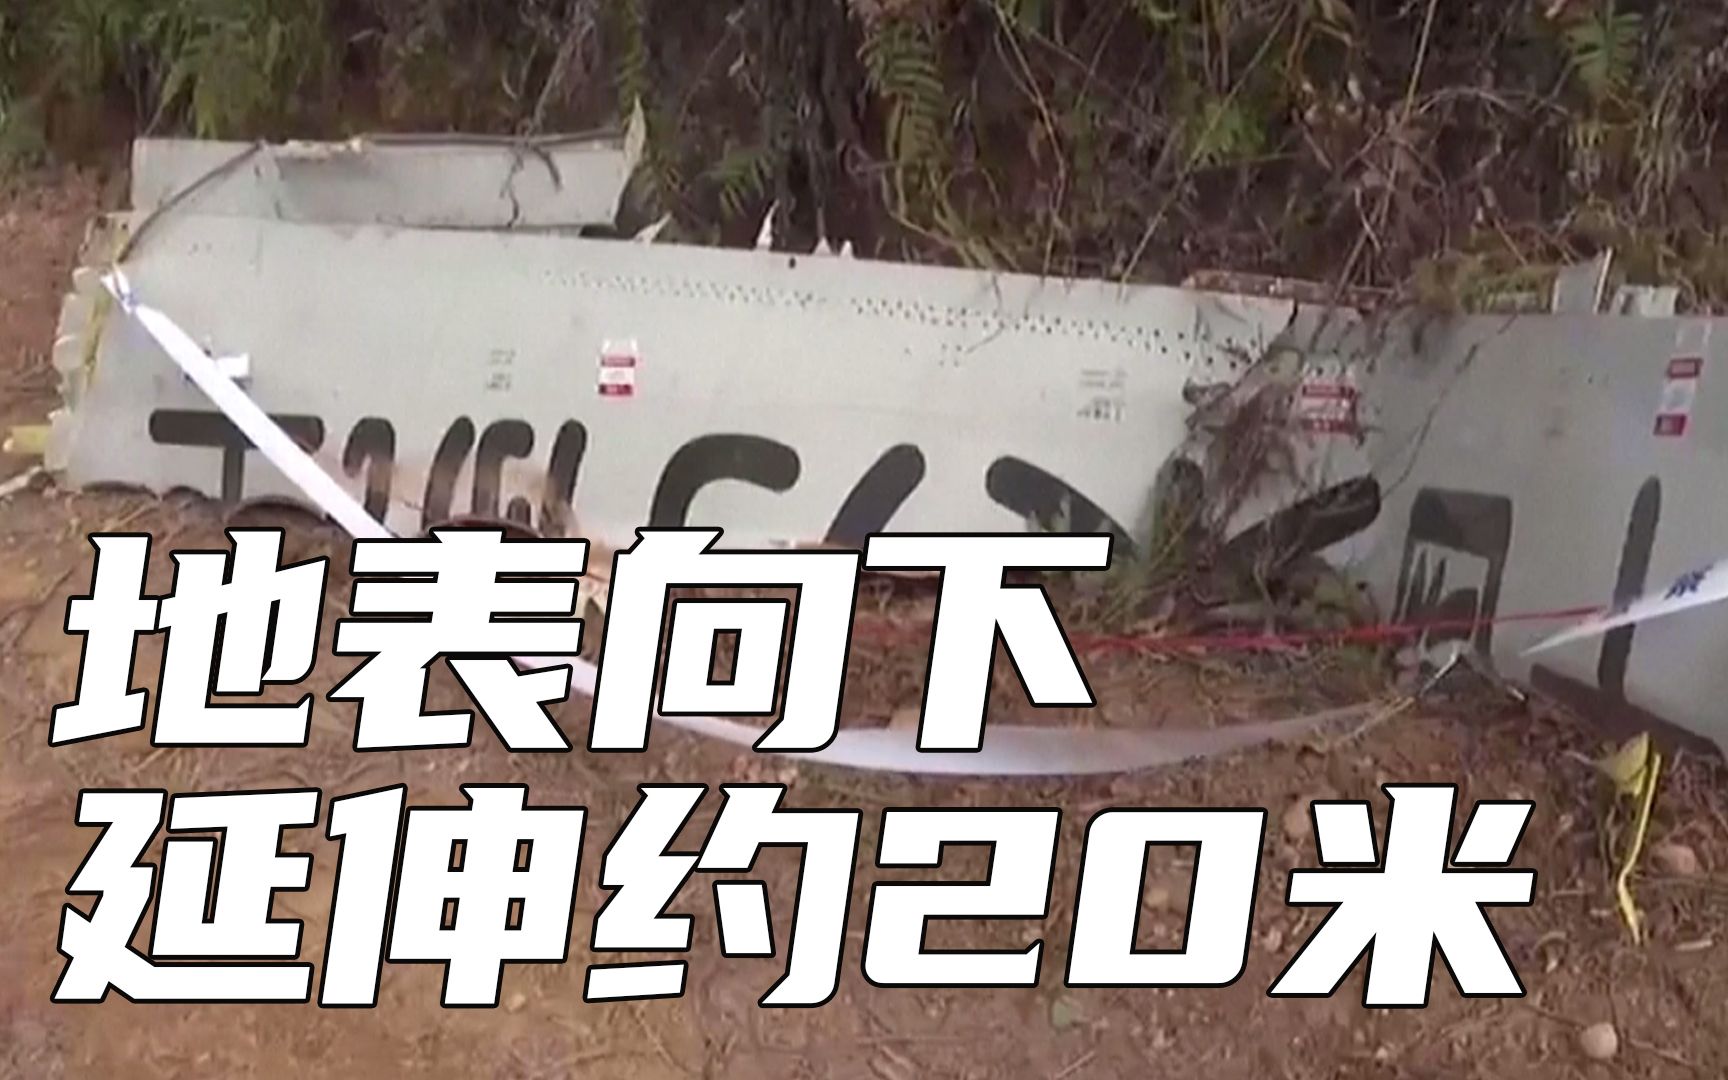 【最新发现】飞机大部分残骸集中在地表向下延伸约20米